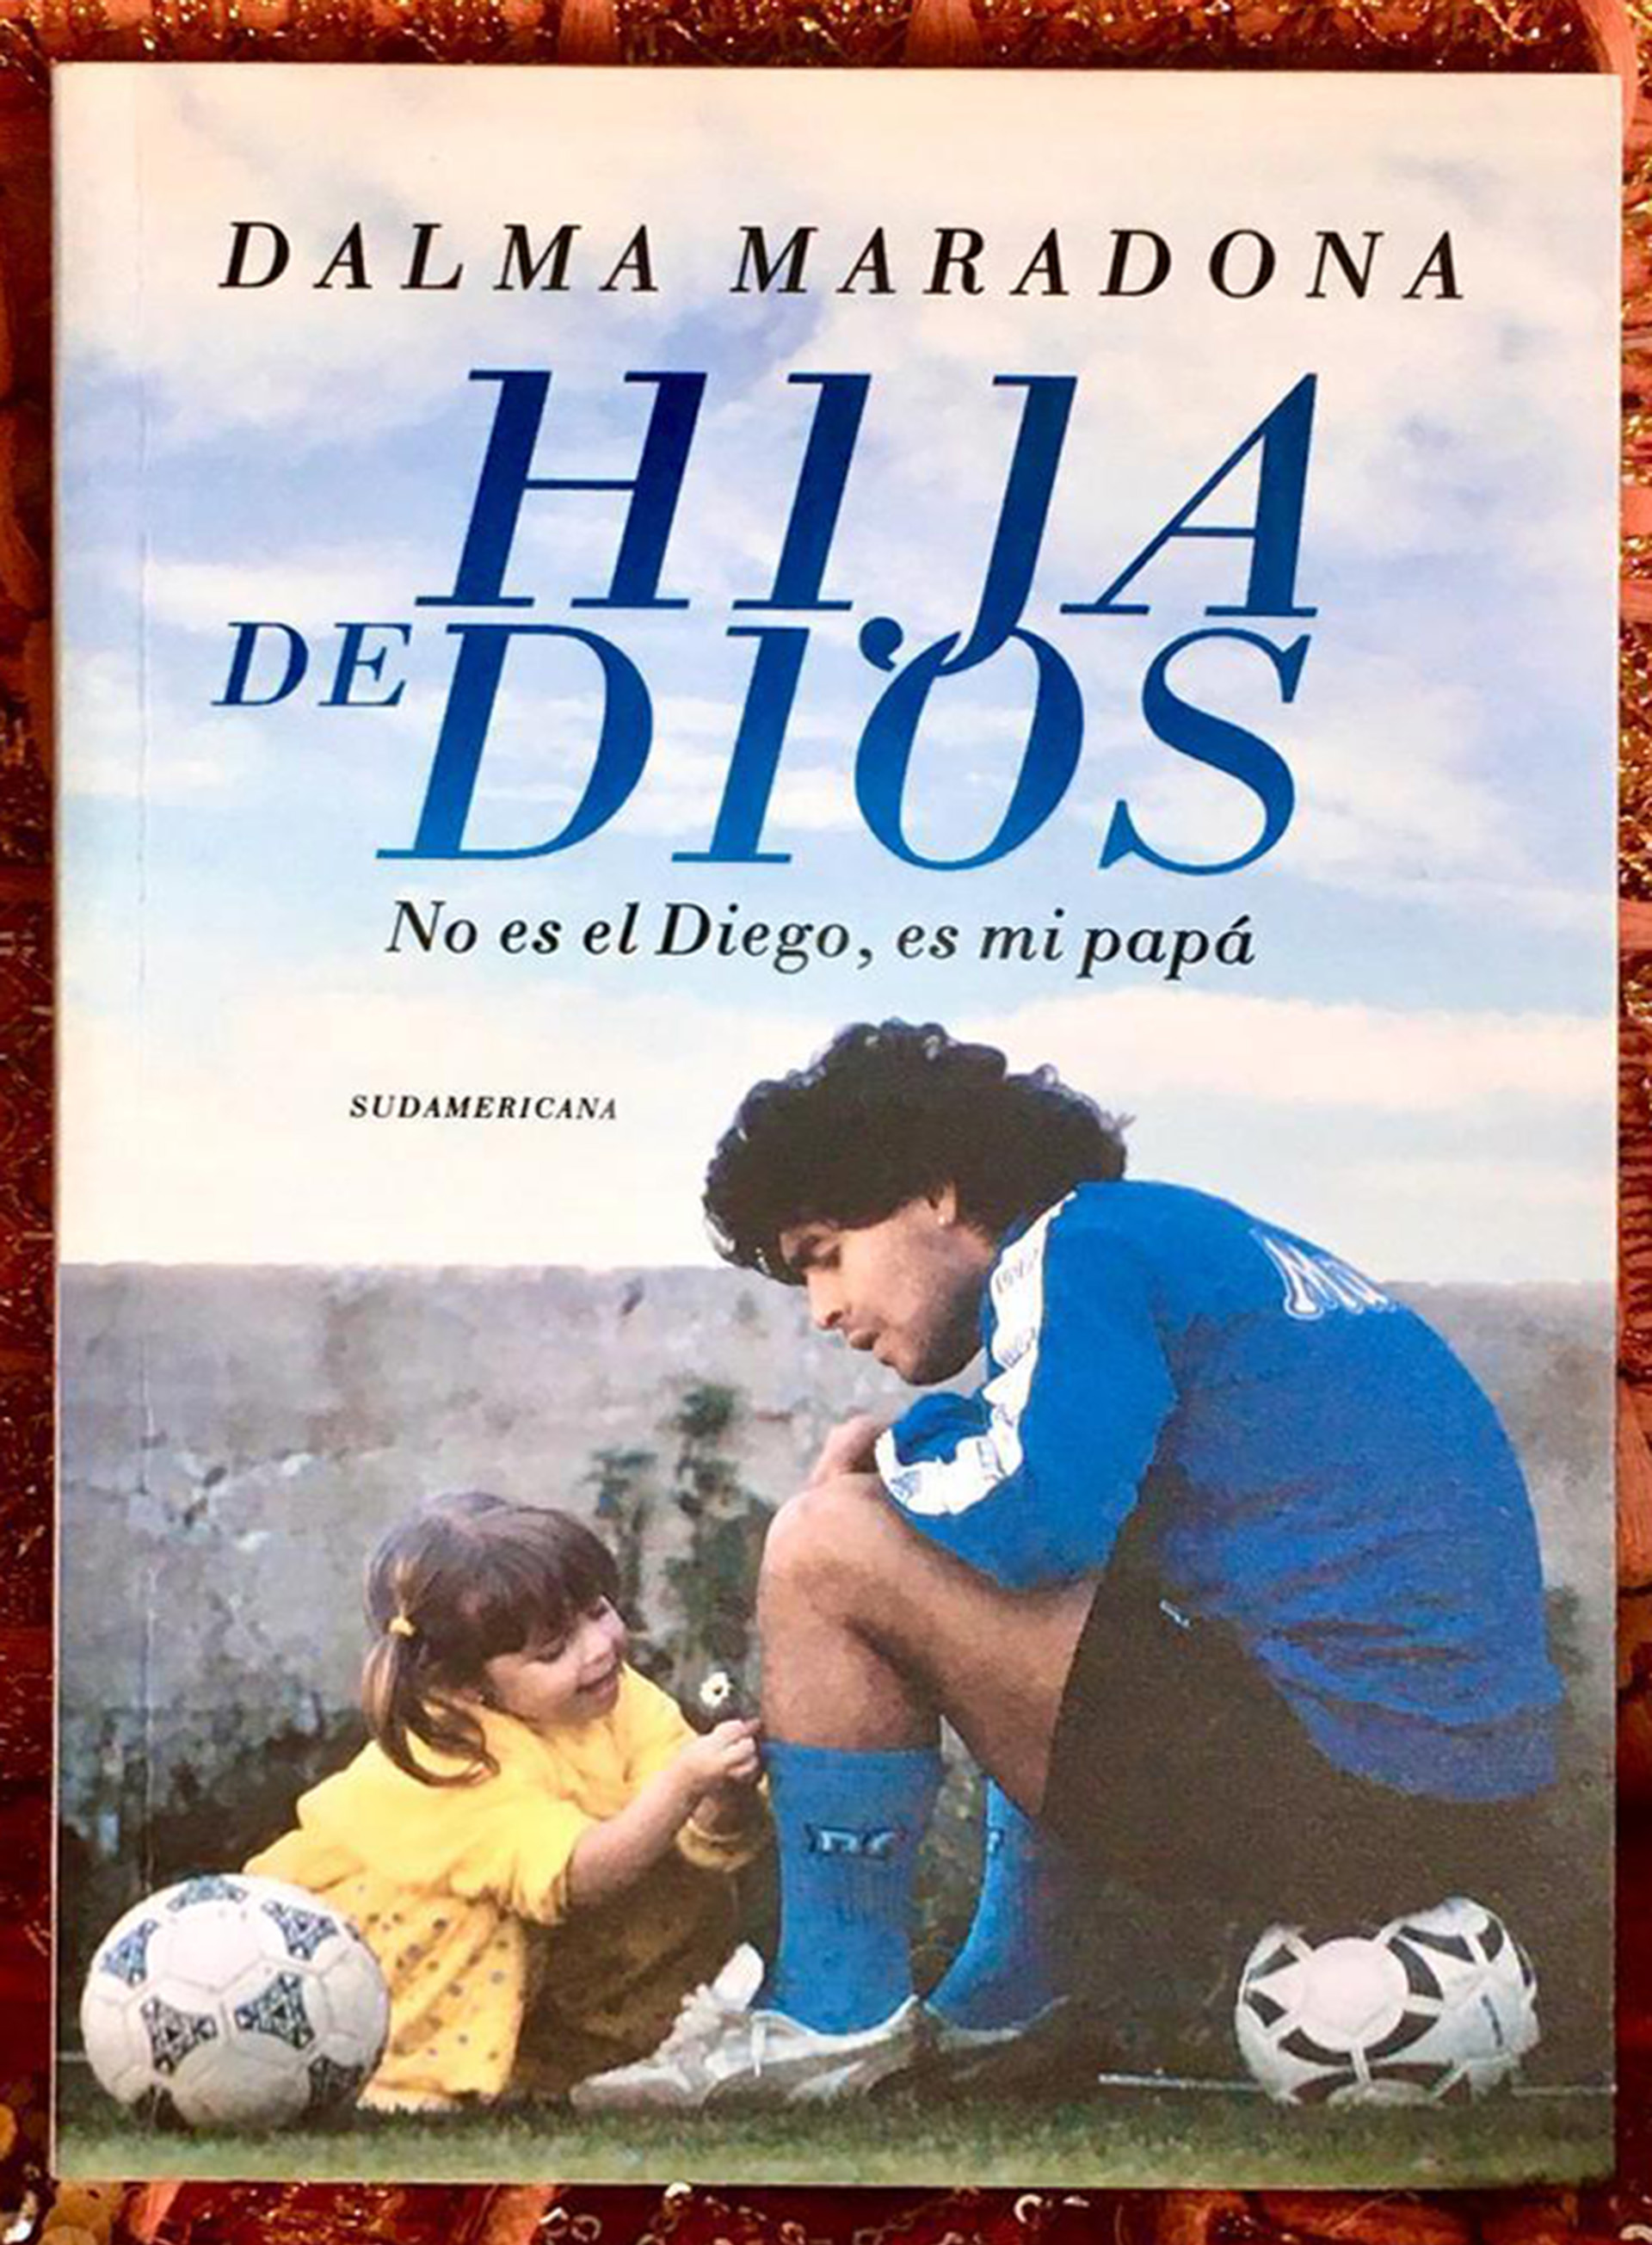 La tapa del libro de Dalma Maradona